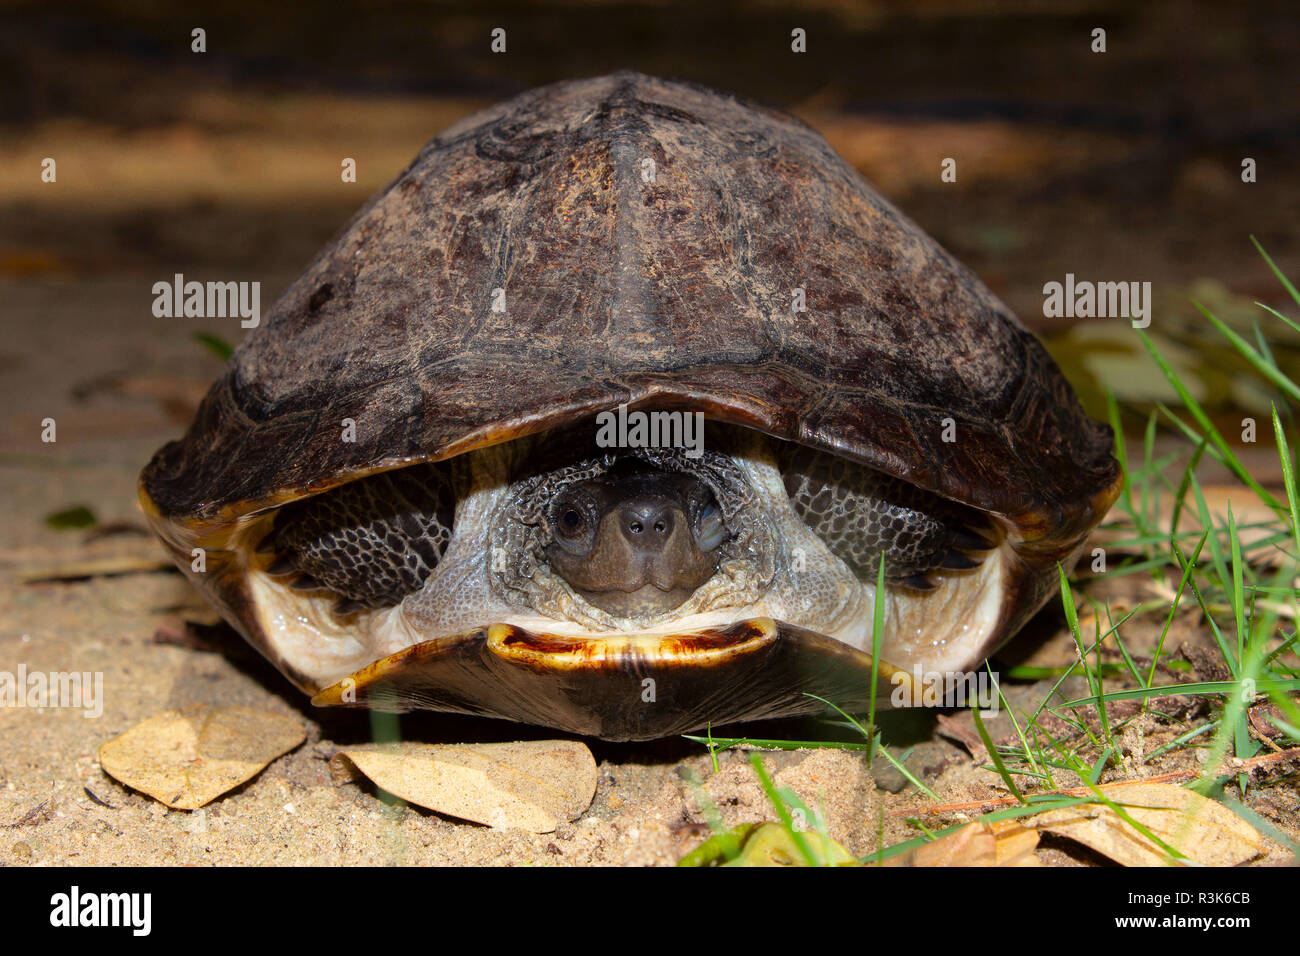 La tortue noire indienne ou l'étang indien terrapin, Melanochelys trijuga, Hampi, Karnataka, Inde. Tortue d'eau douce de taille moyenne trouvée en Asie du Sud. Banque D'Images